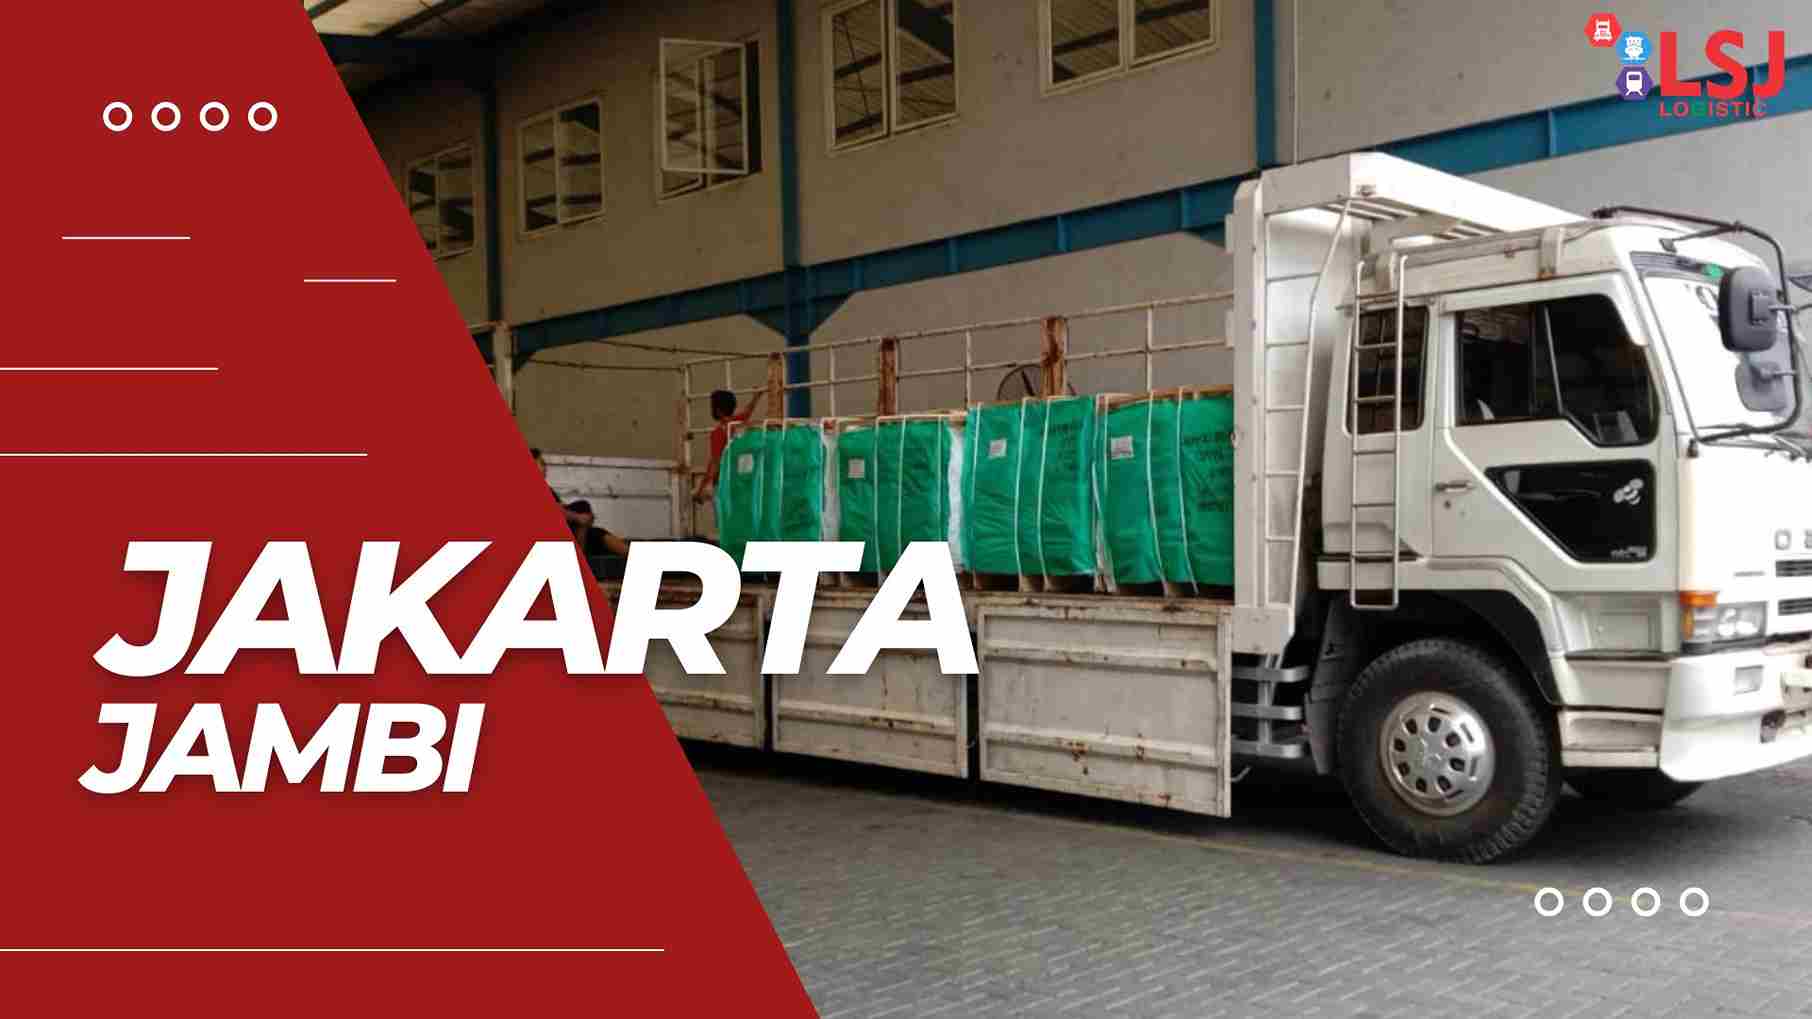 Tarif Pengiriman Container dari Jakarta ke Jambi